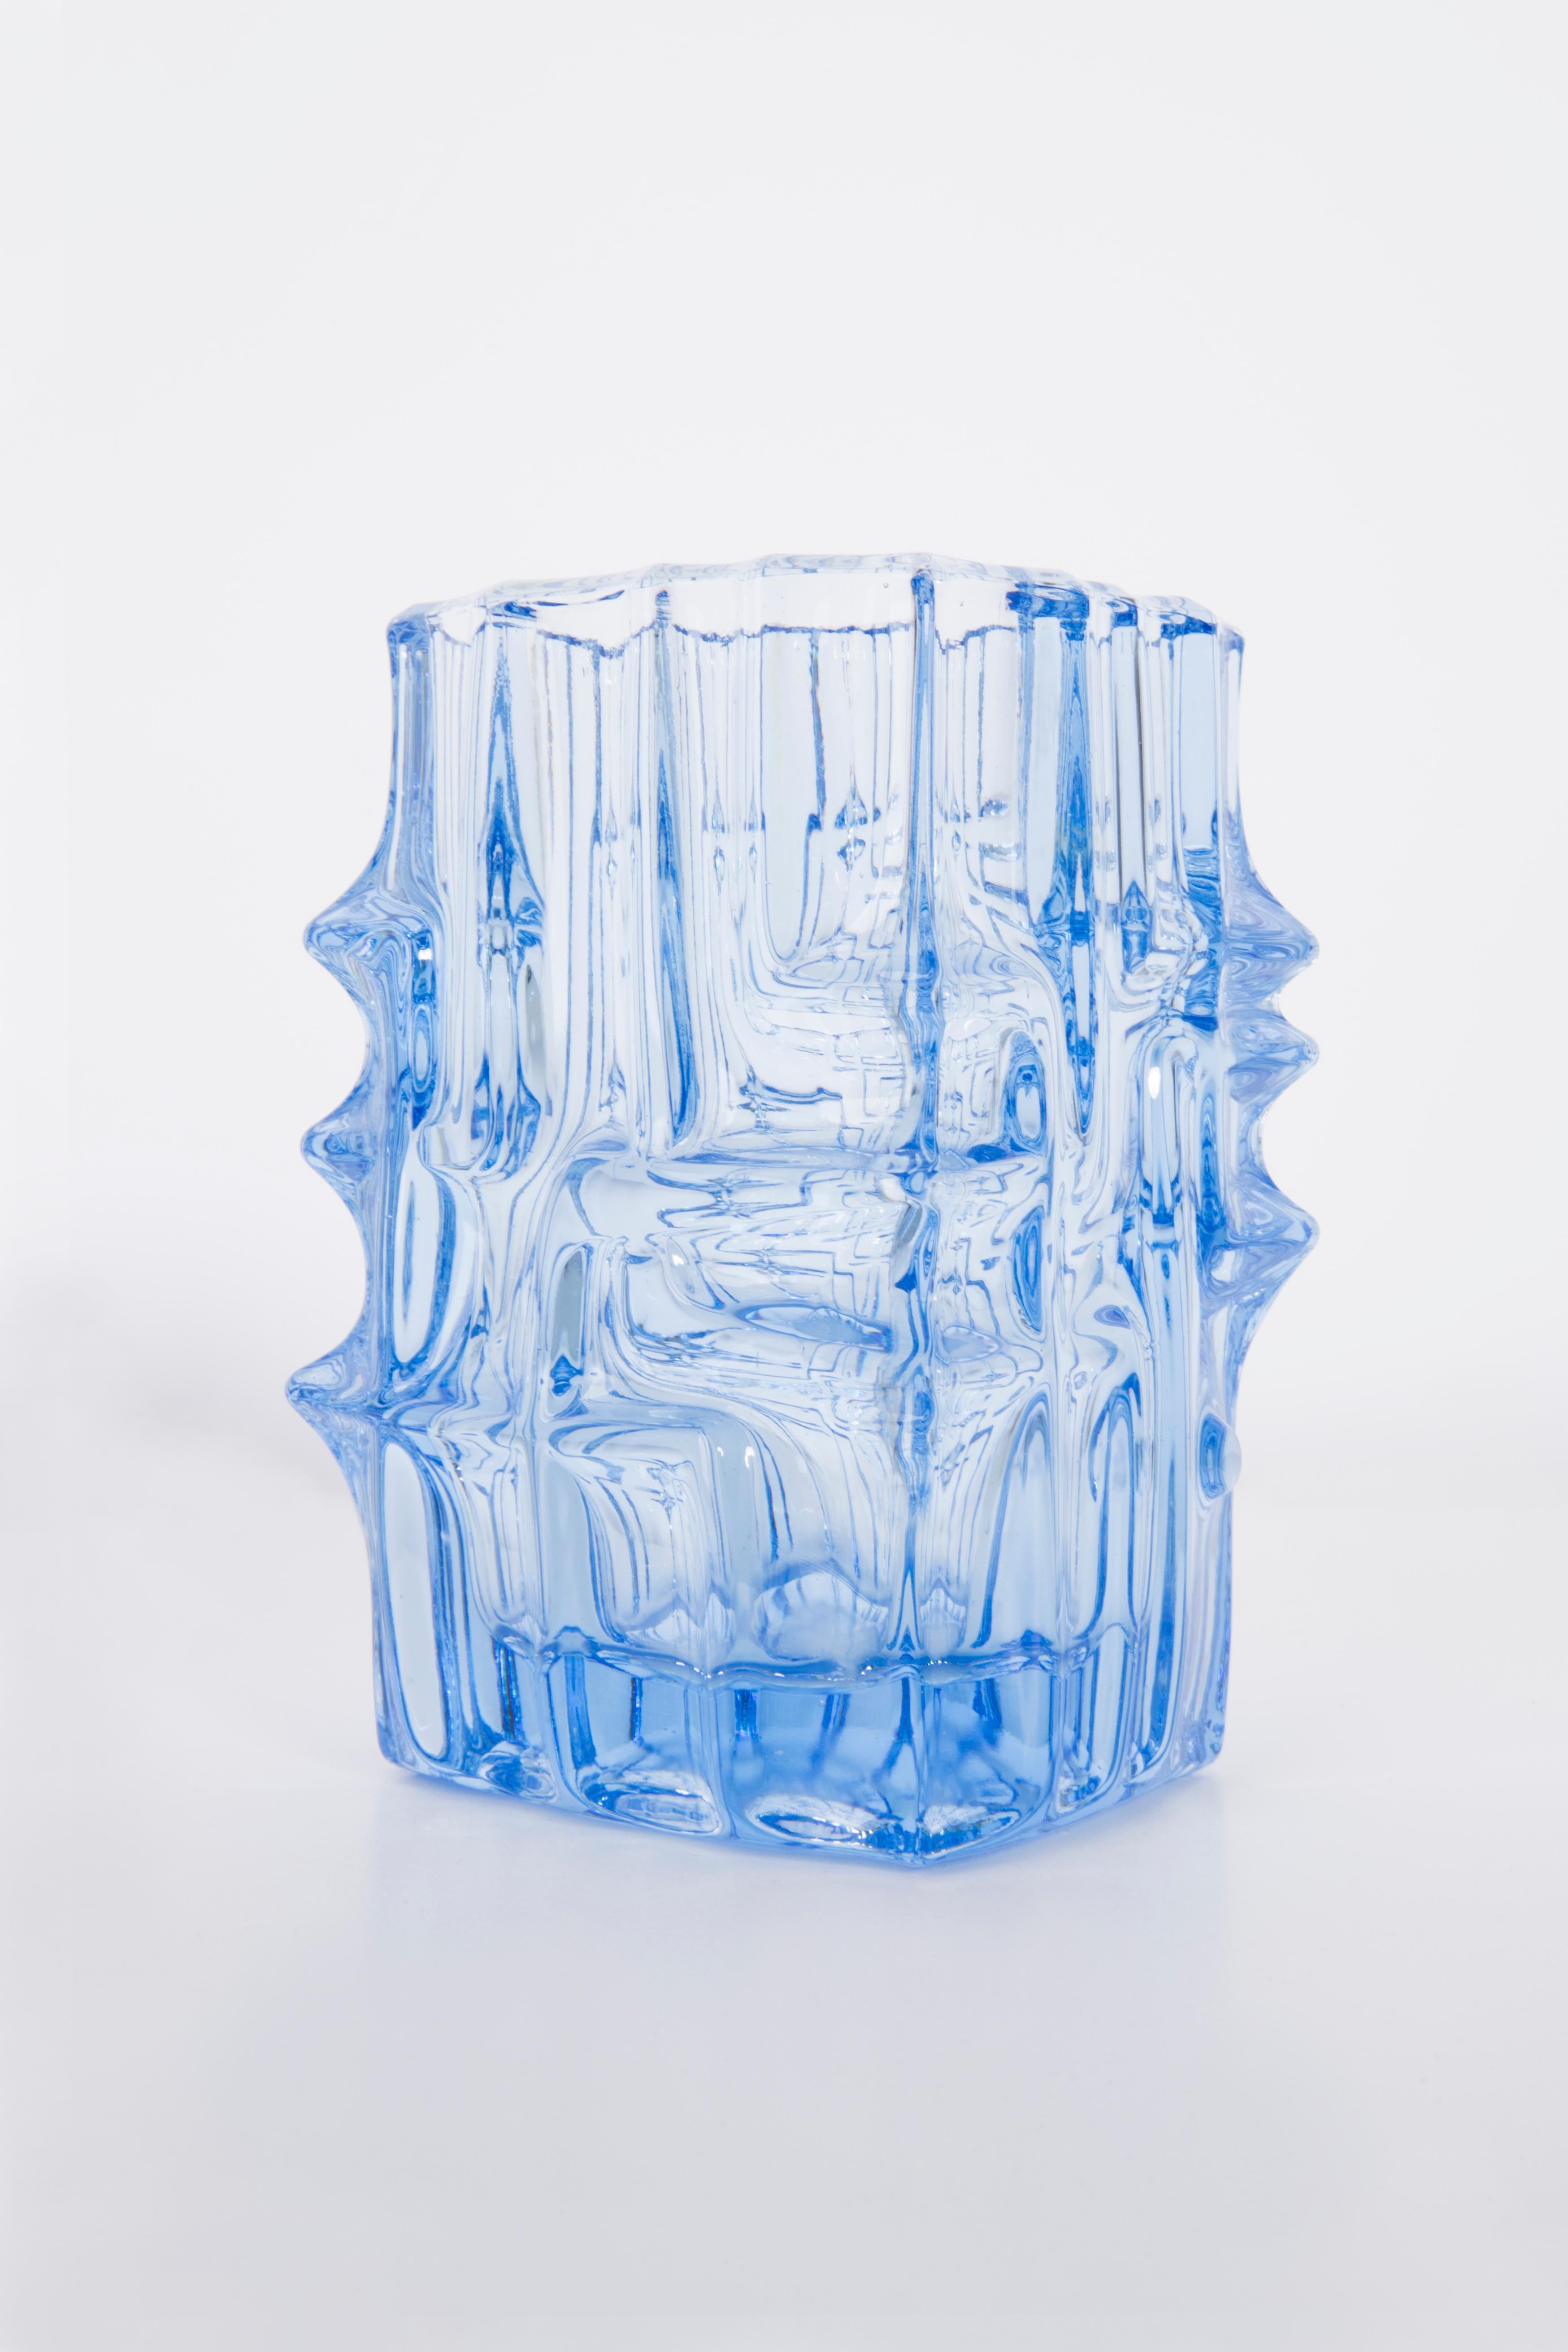 Mid-Century Modern Light Blue Vase by Vladislav Urban for Sklo Union, 20th Century, Europe, 1960s For Sale